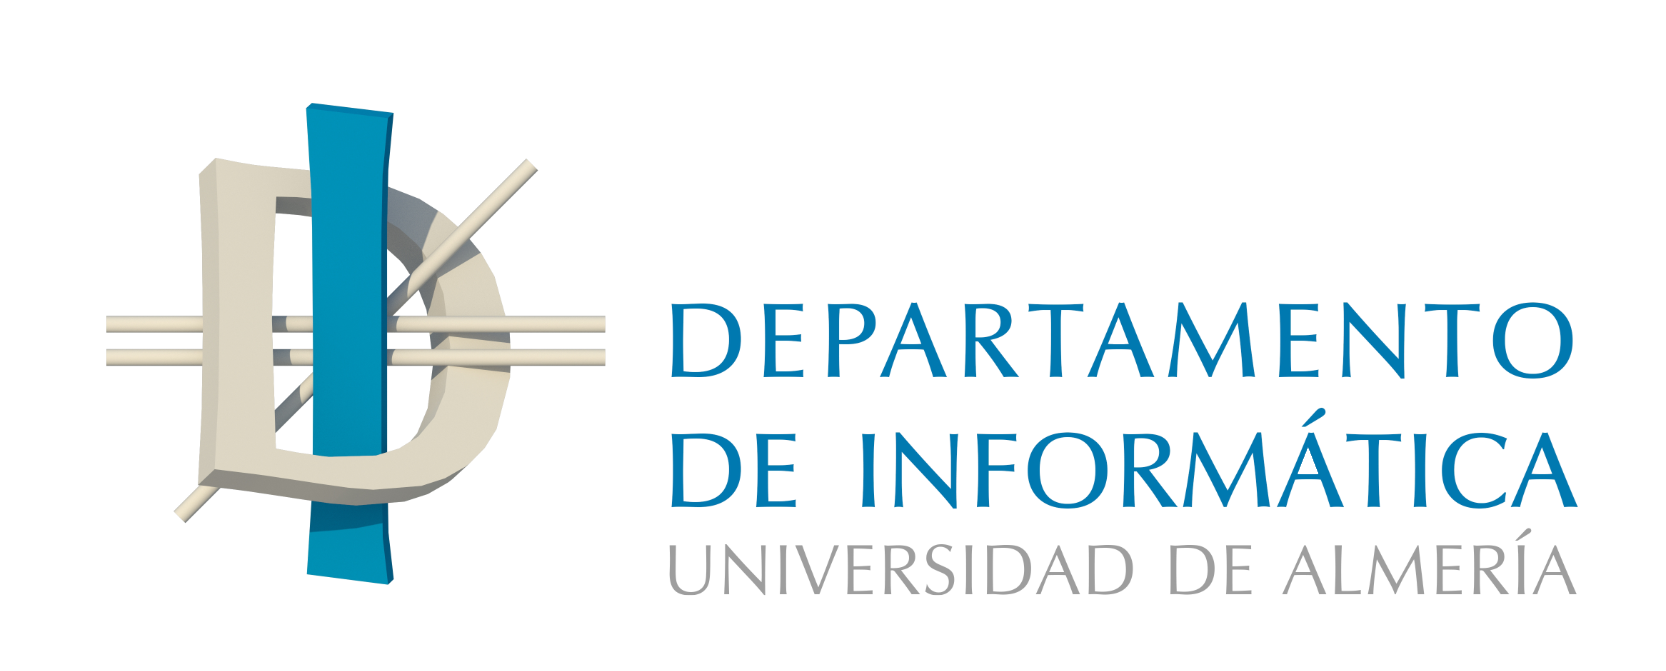 Departamento de informática de la Universidad de Almería